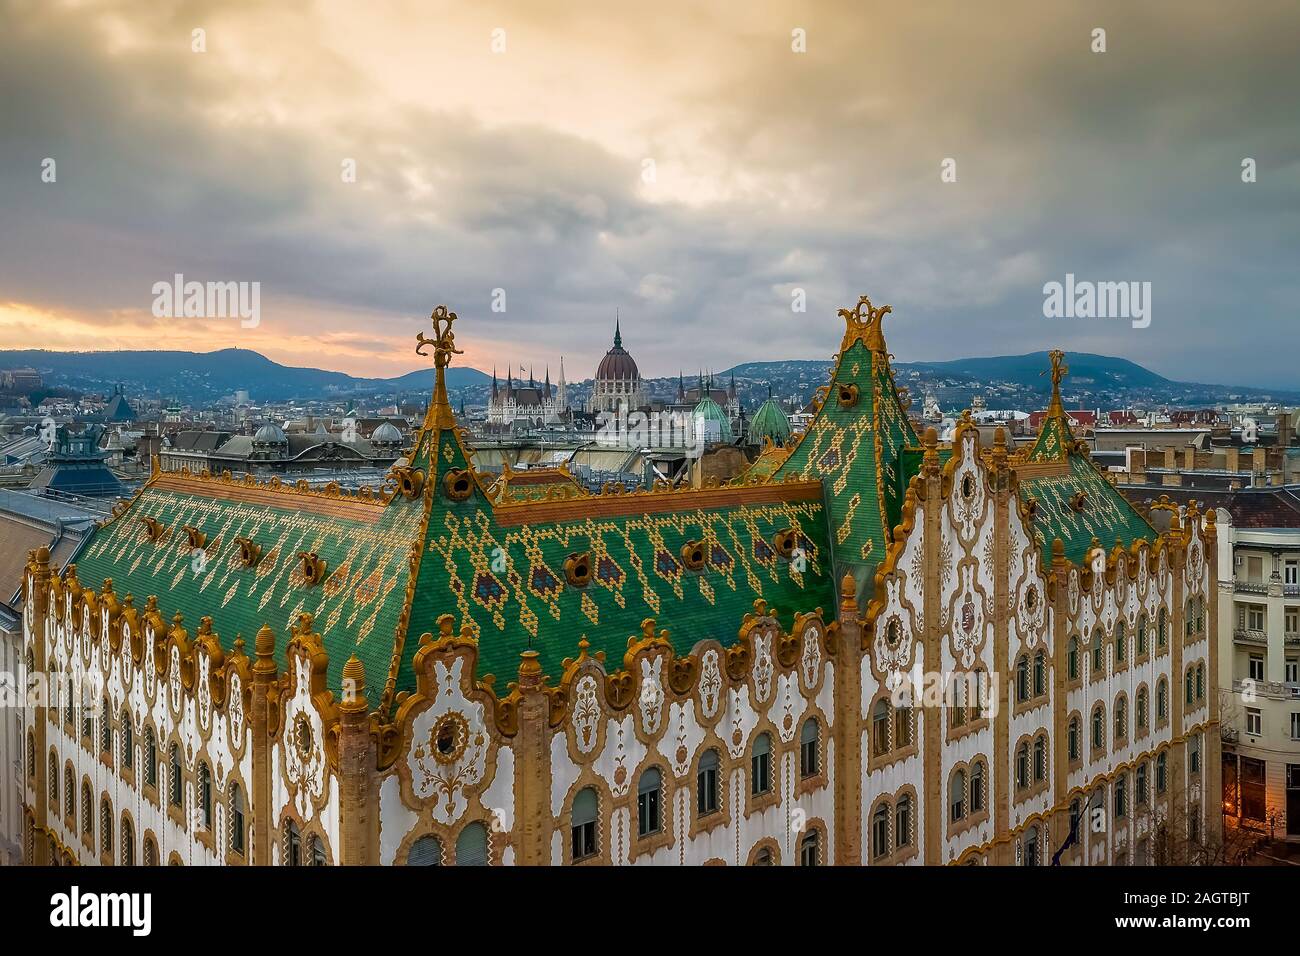 Erstaunliche Dach in Budapest, Ungarn. Staatskasse Gebäude mit ungarischen Parlament im Winter. Alle Kacheln auf dem Dach, von der ganzen Welt berühmt gemacht hat Stockfoto